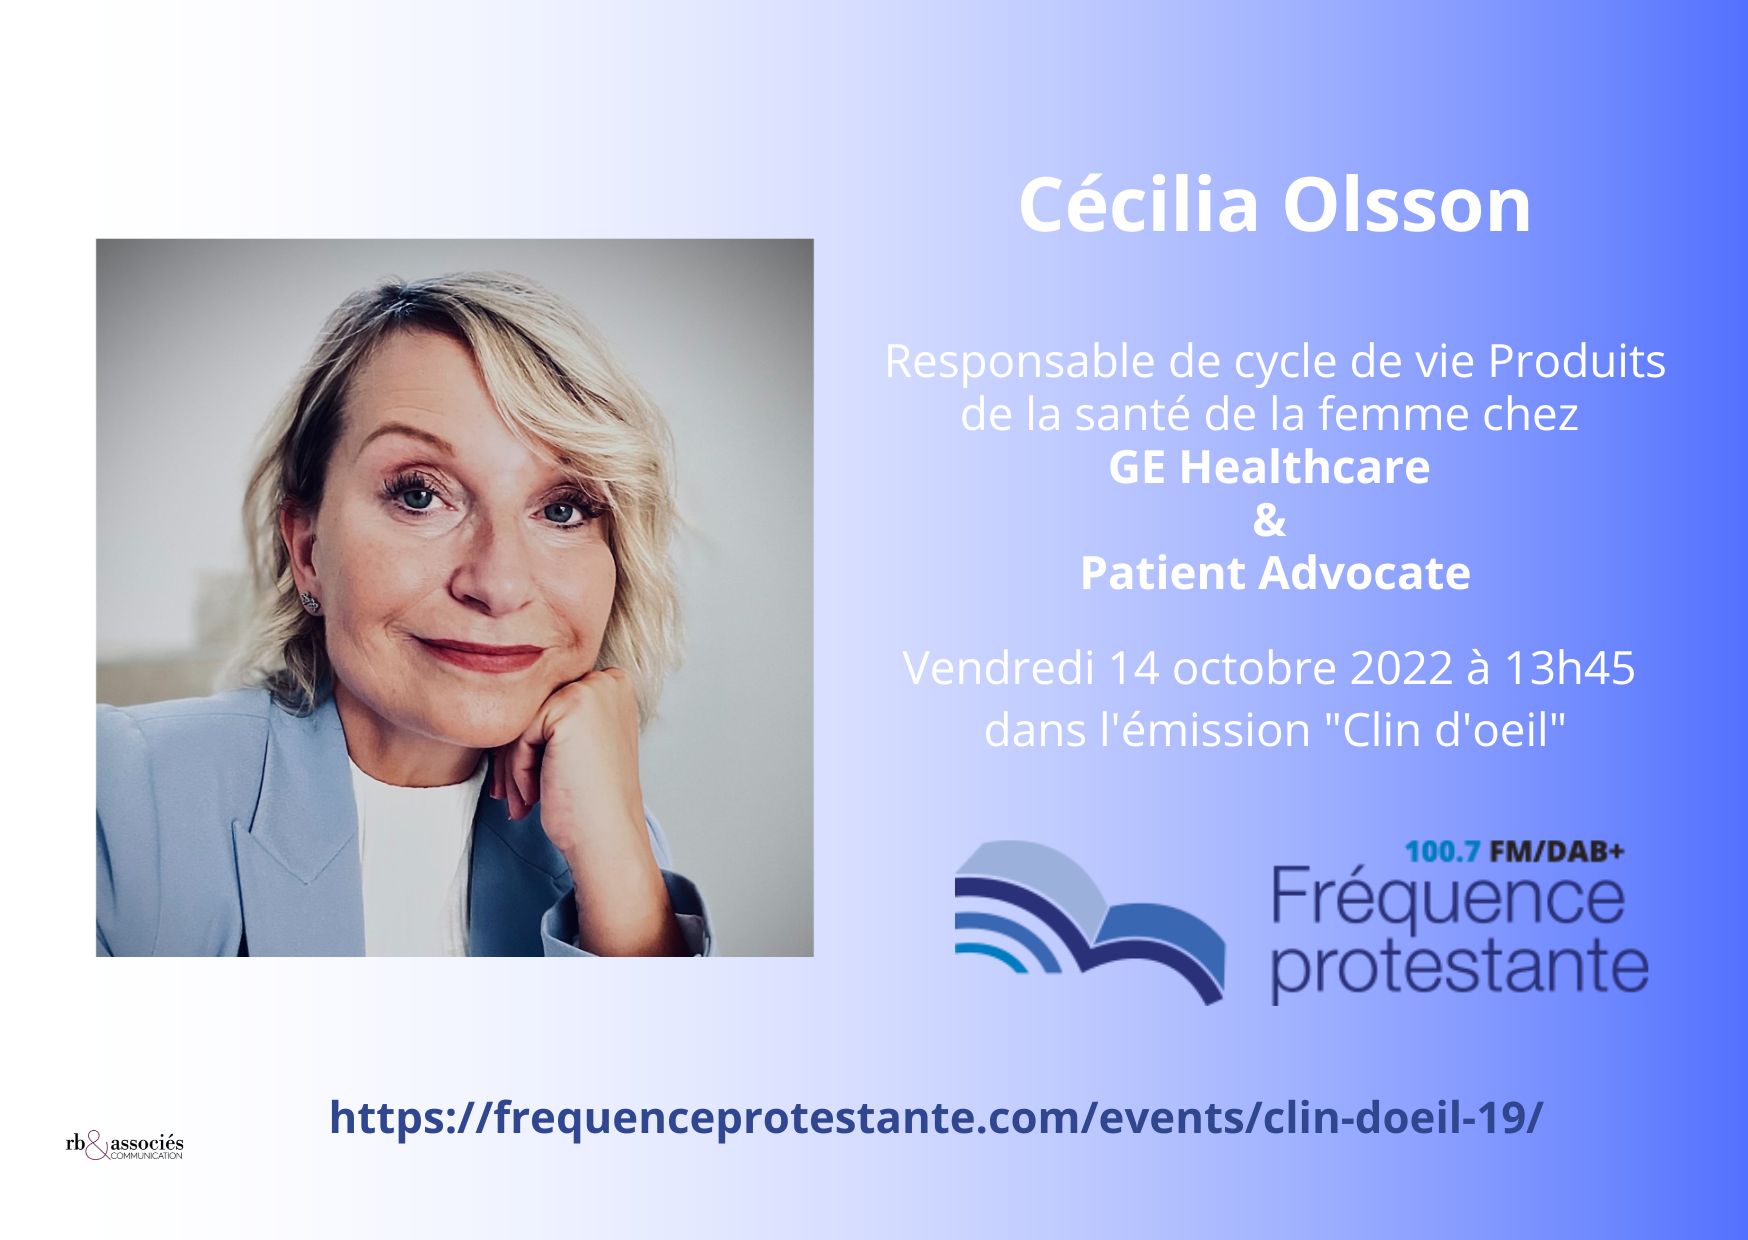 Interview de Cécilia Ollson, Product Life Cycle Manager & Patient Advocate chez GE Healthcare sur Fréquence Protestante